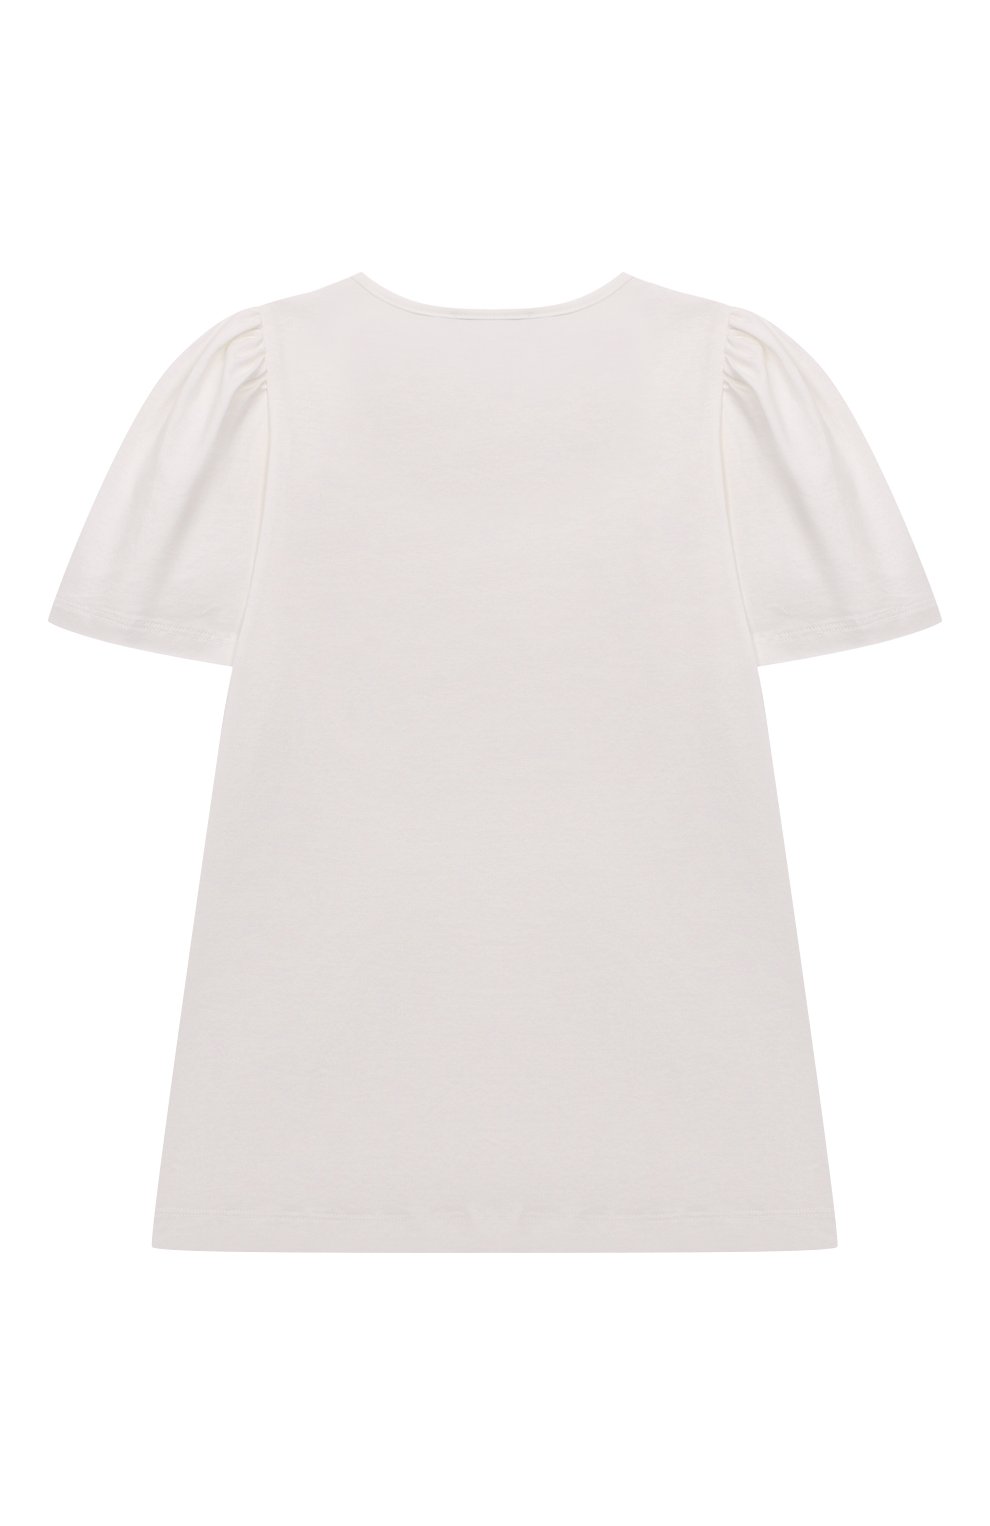 Детская хлопковая футболка MONNALISA белого цвета, арт. 71A600 | Фото 2 (Девочки Кросс-КТ: футболка-одежда; Рукава: Короткие; Материал внешний: Хлопок)